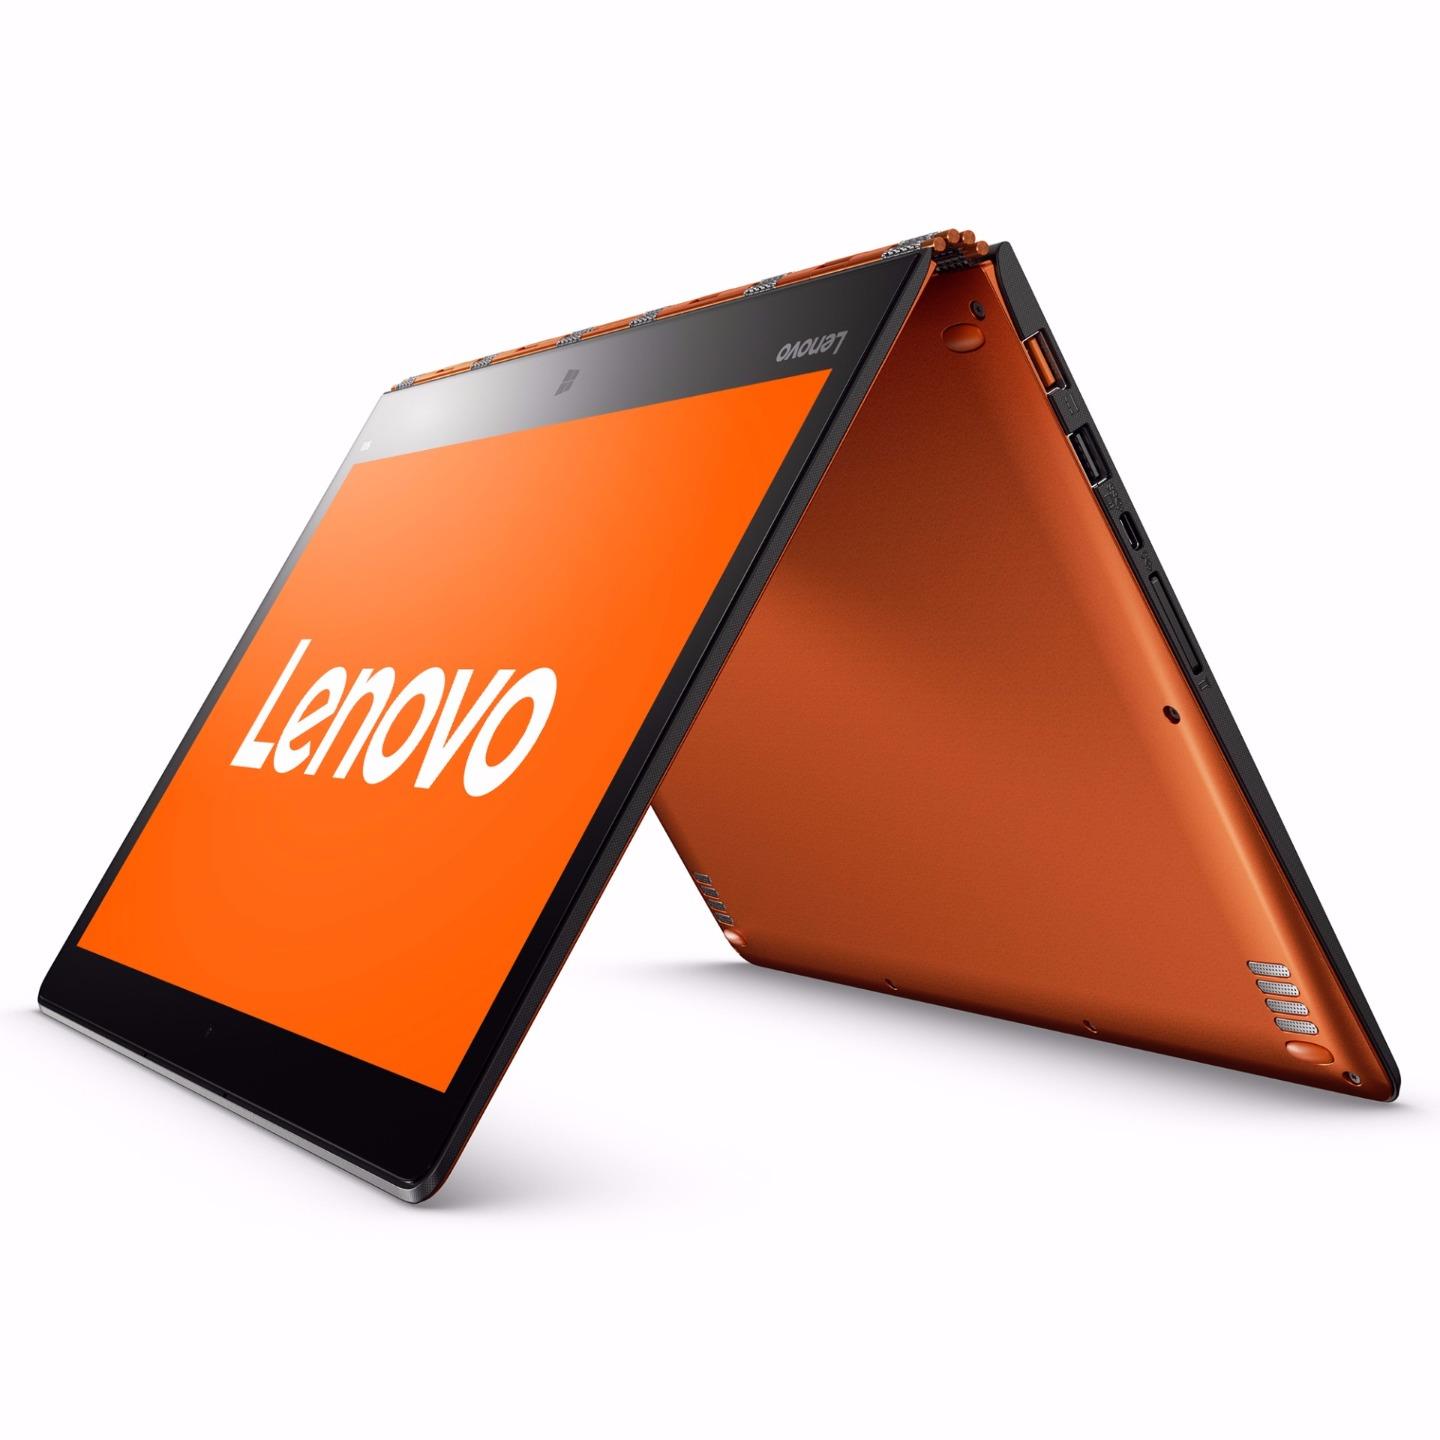 Lenovo Yoga Hybrid Ultrabook QHD Touch I7 6500u 1ghz 8gb